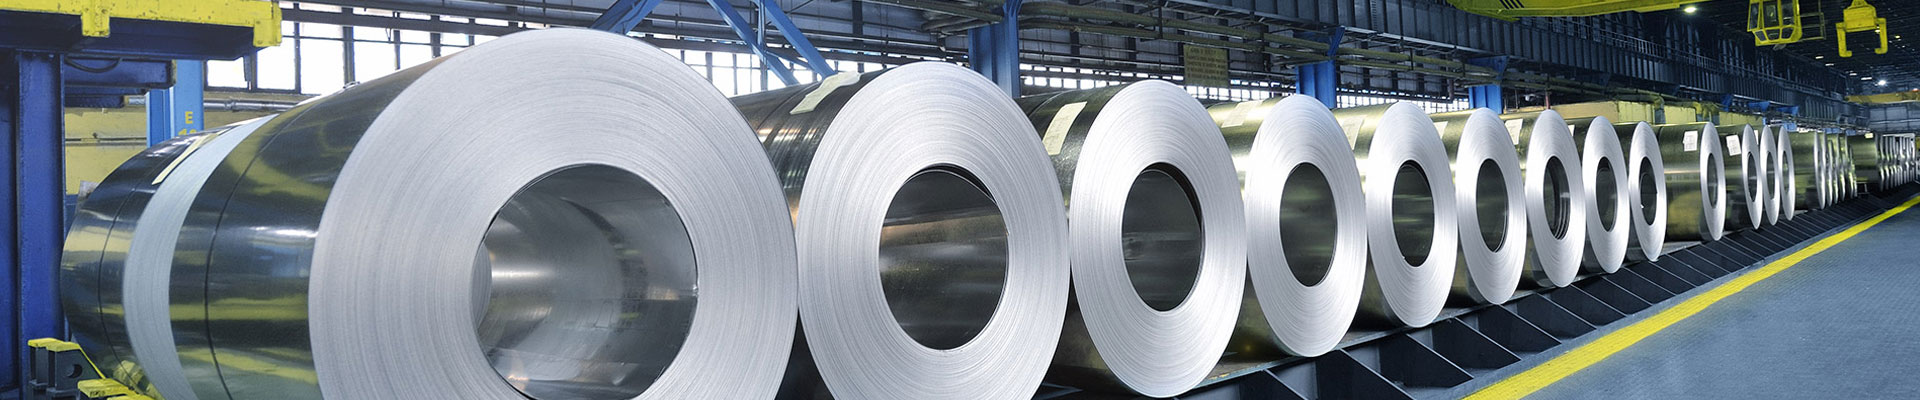 China JingMei Aluminium Industry Co., Ltd.